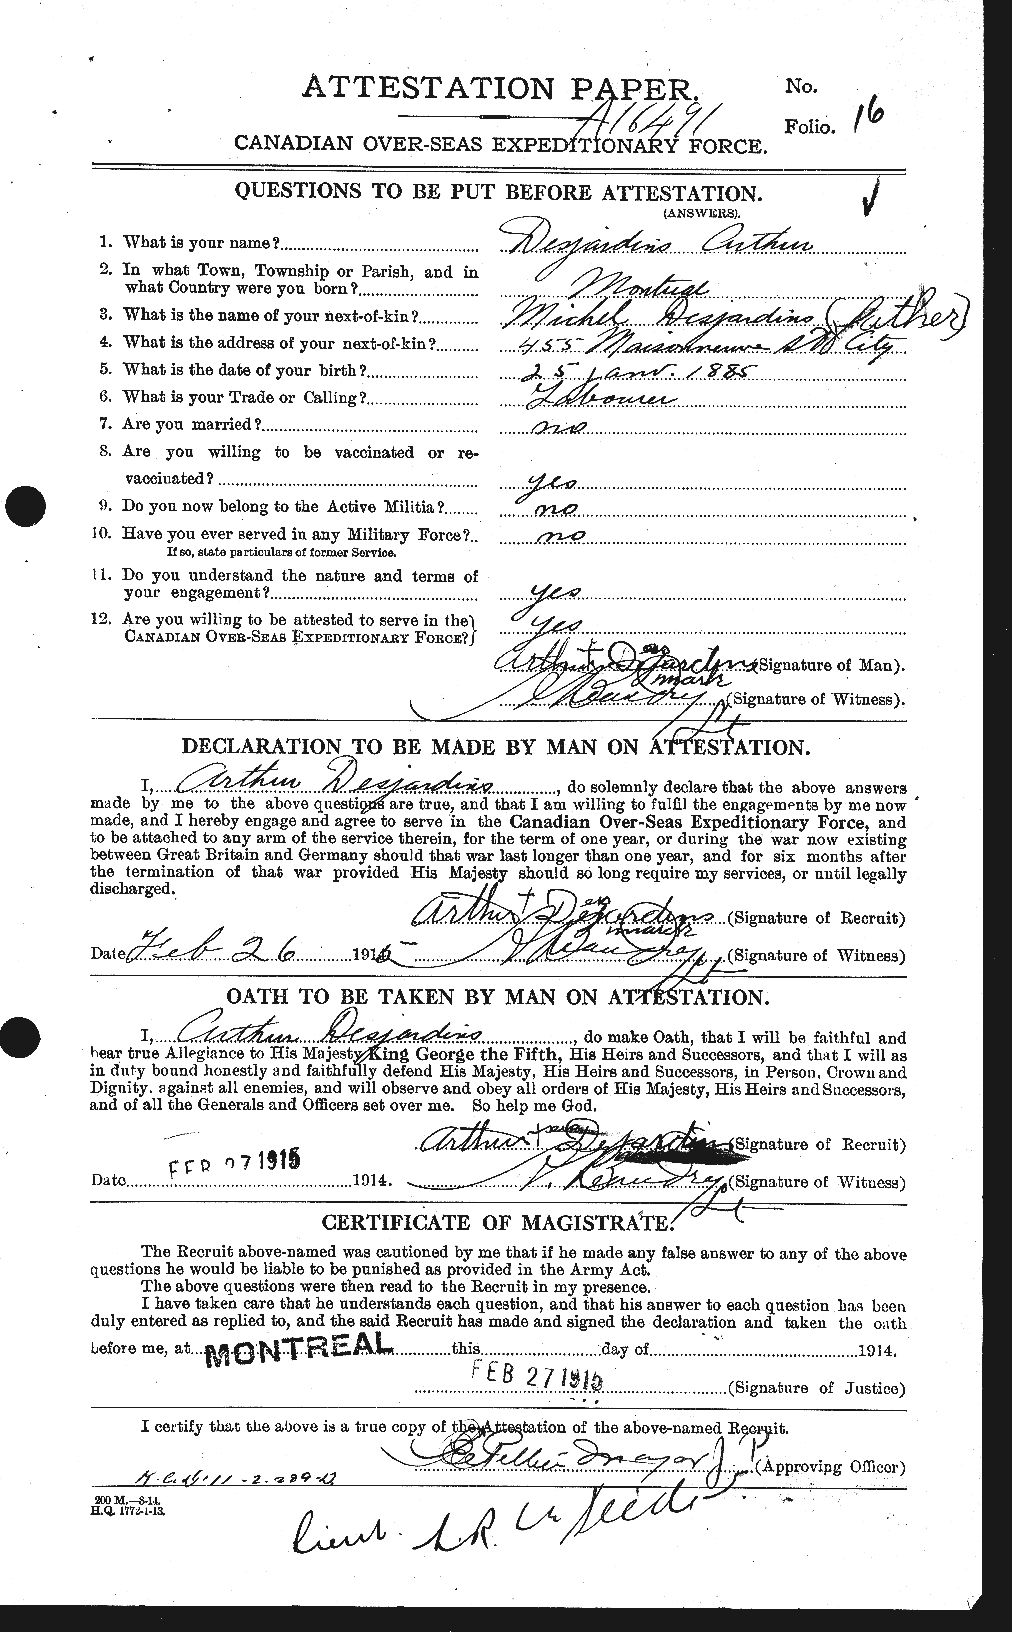 Dossiers du Personnel de la Première Guerre mondiale - CEC 289850a